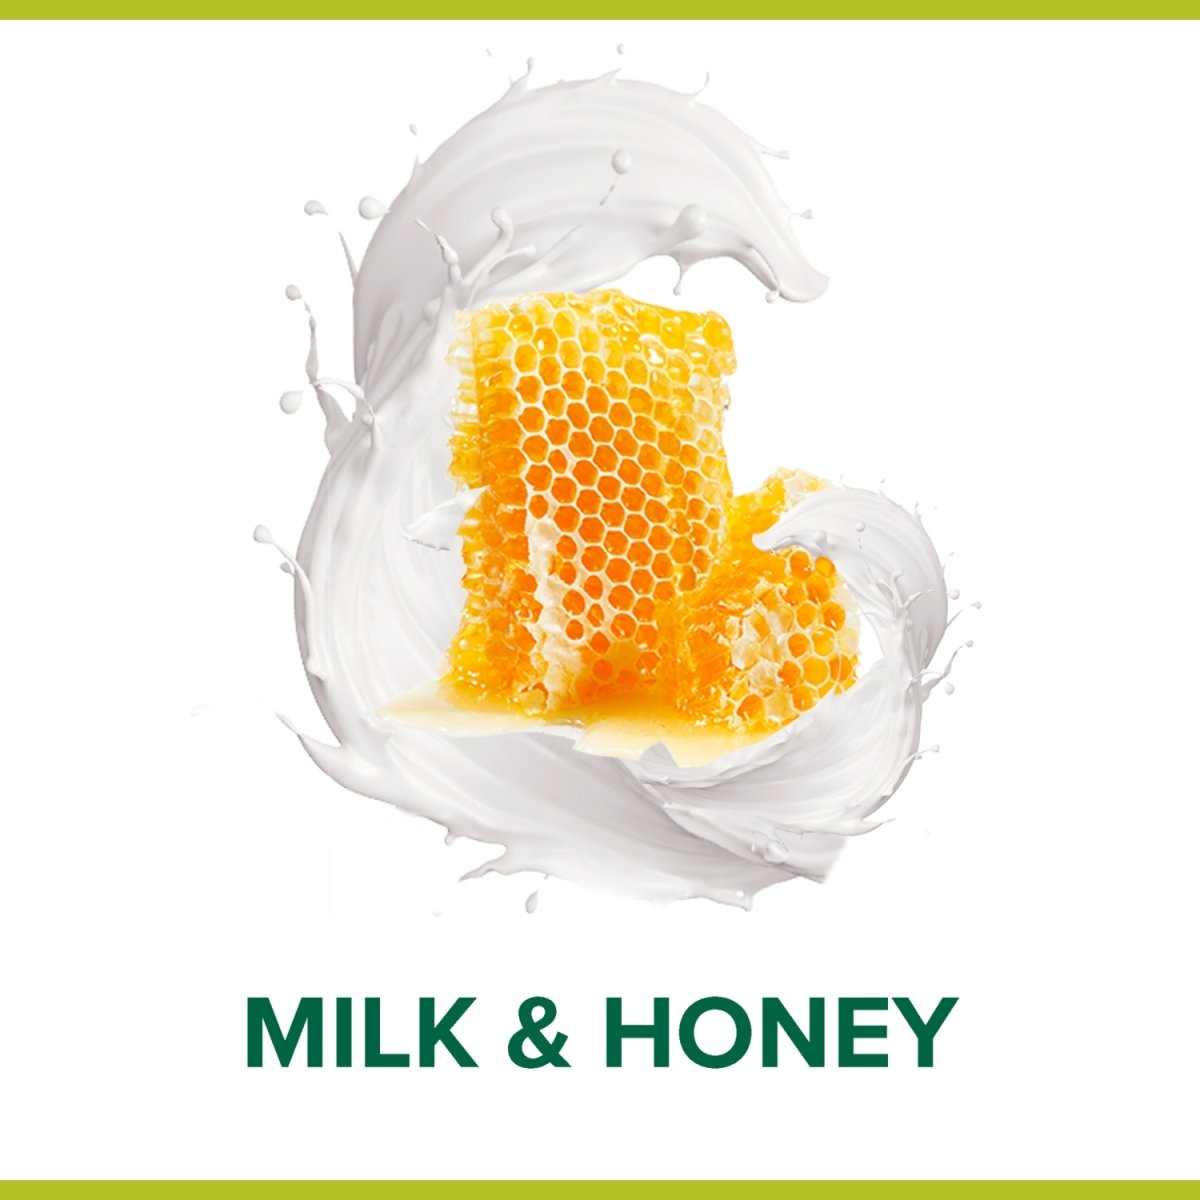 Palmolie Shower Milk & Honey Pump - Intamarque 8714789526508